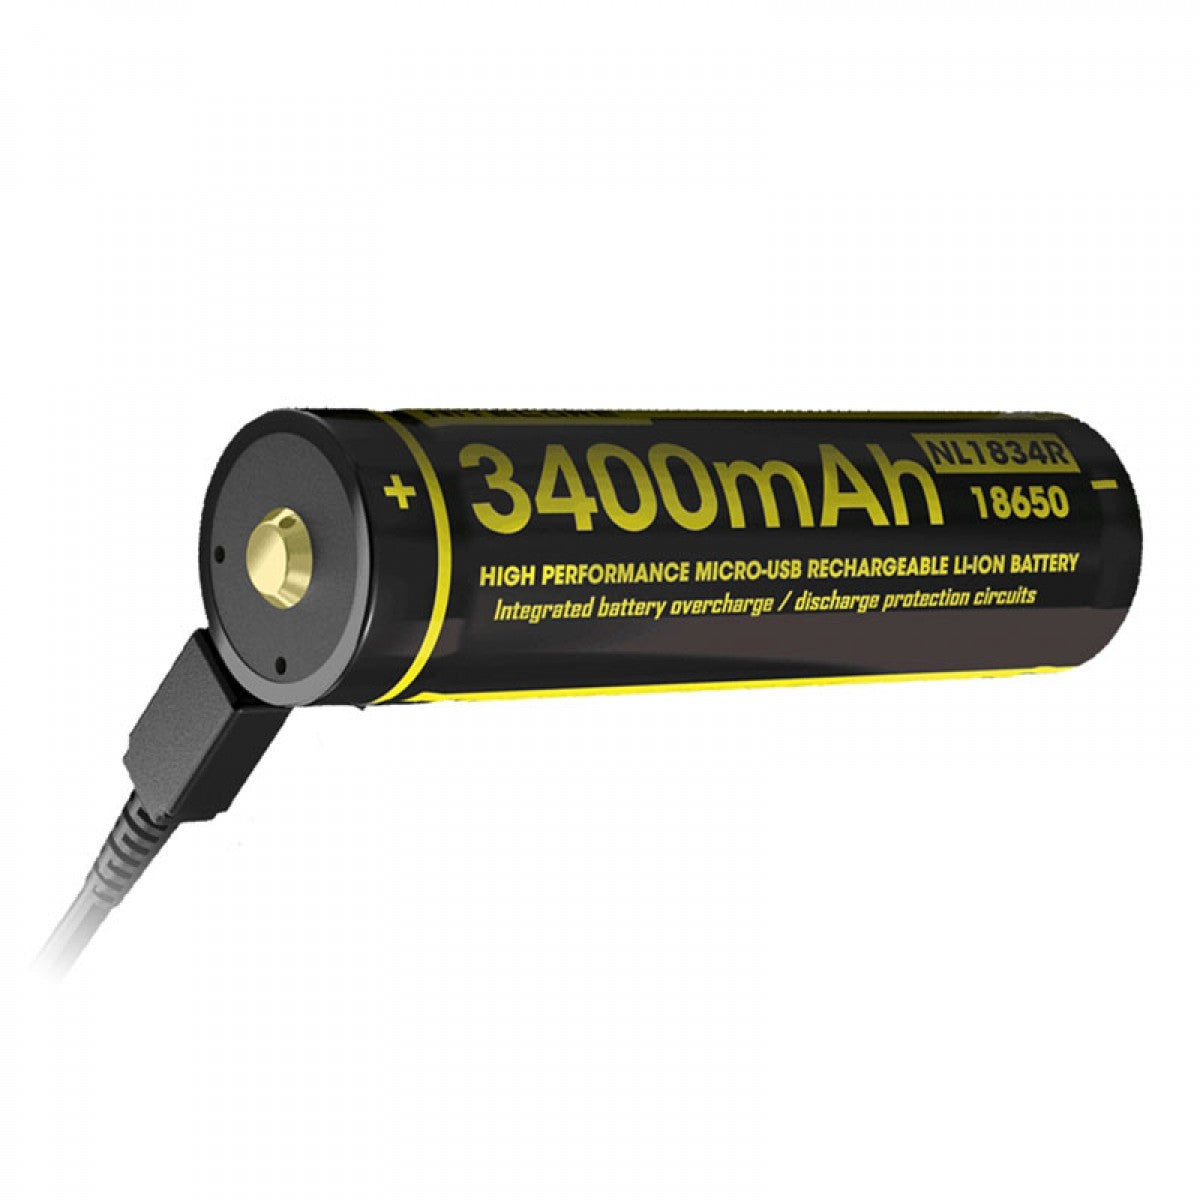 奈特科尔电池 NL1834R 3400mAh USB 可充电 18650 电池